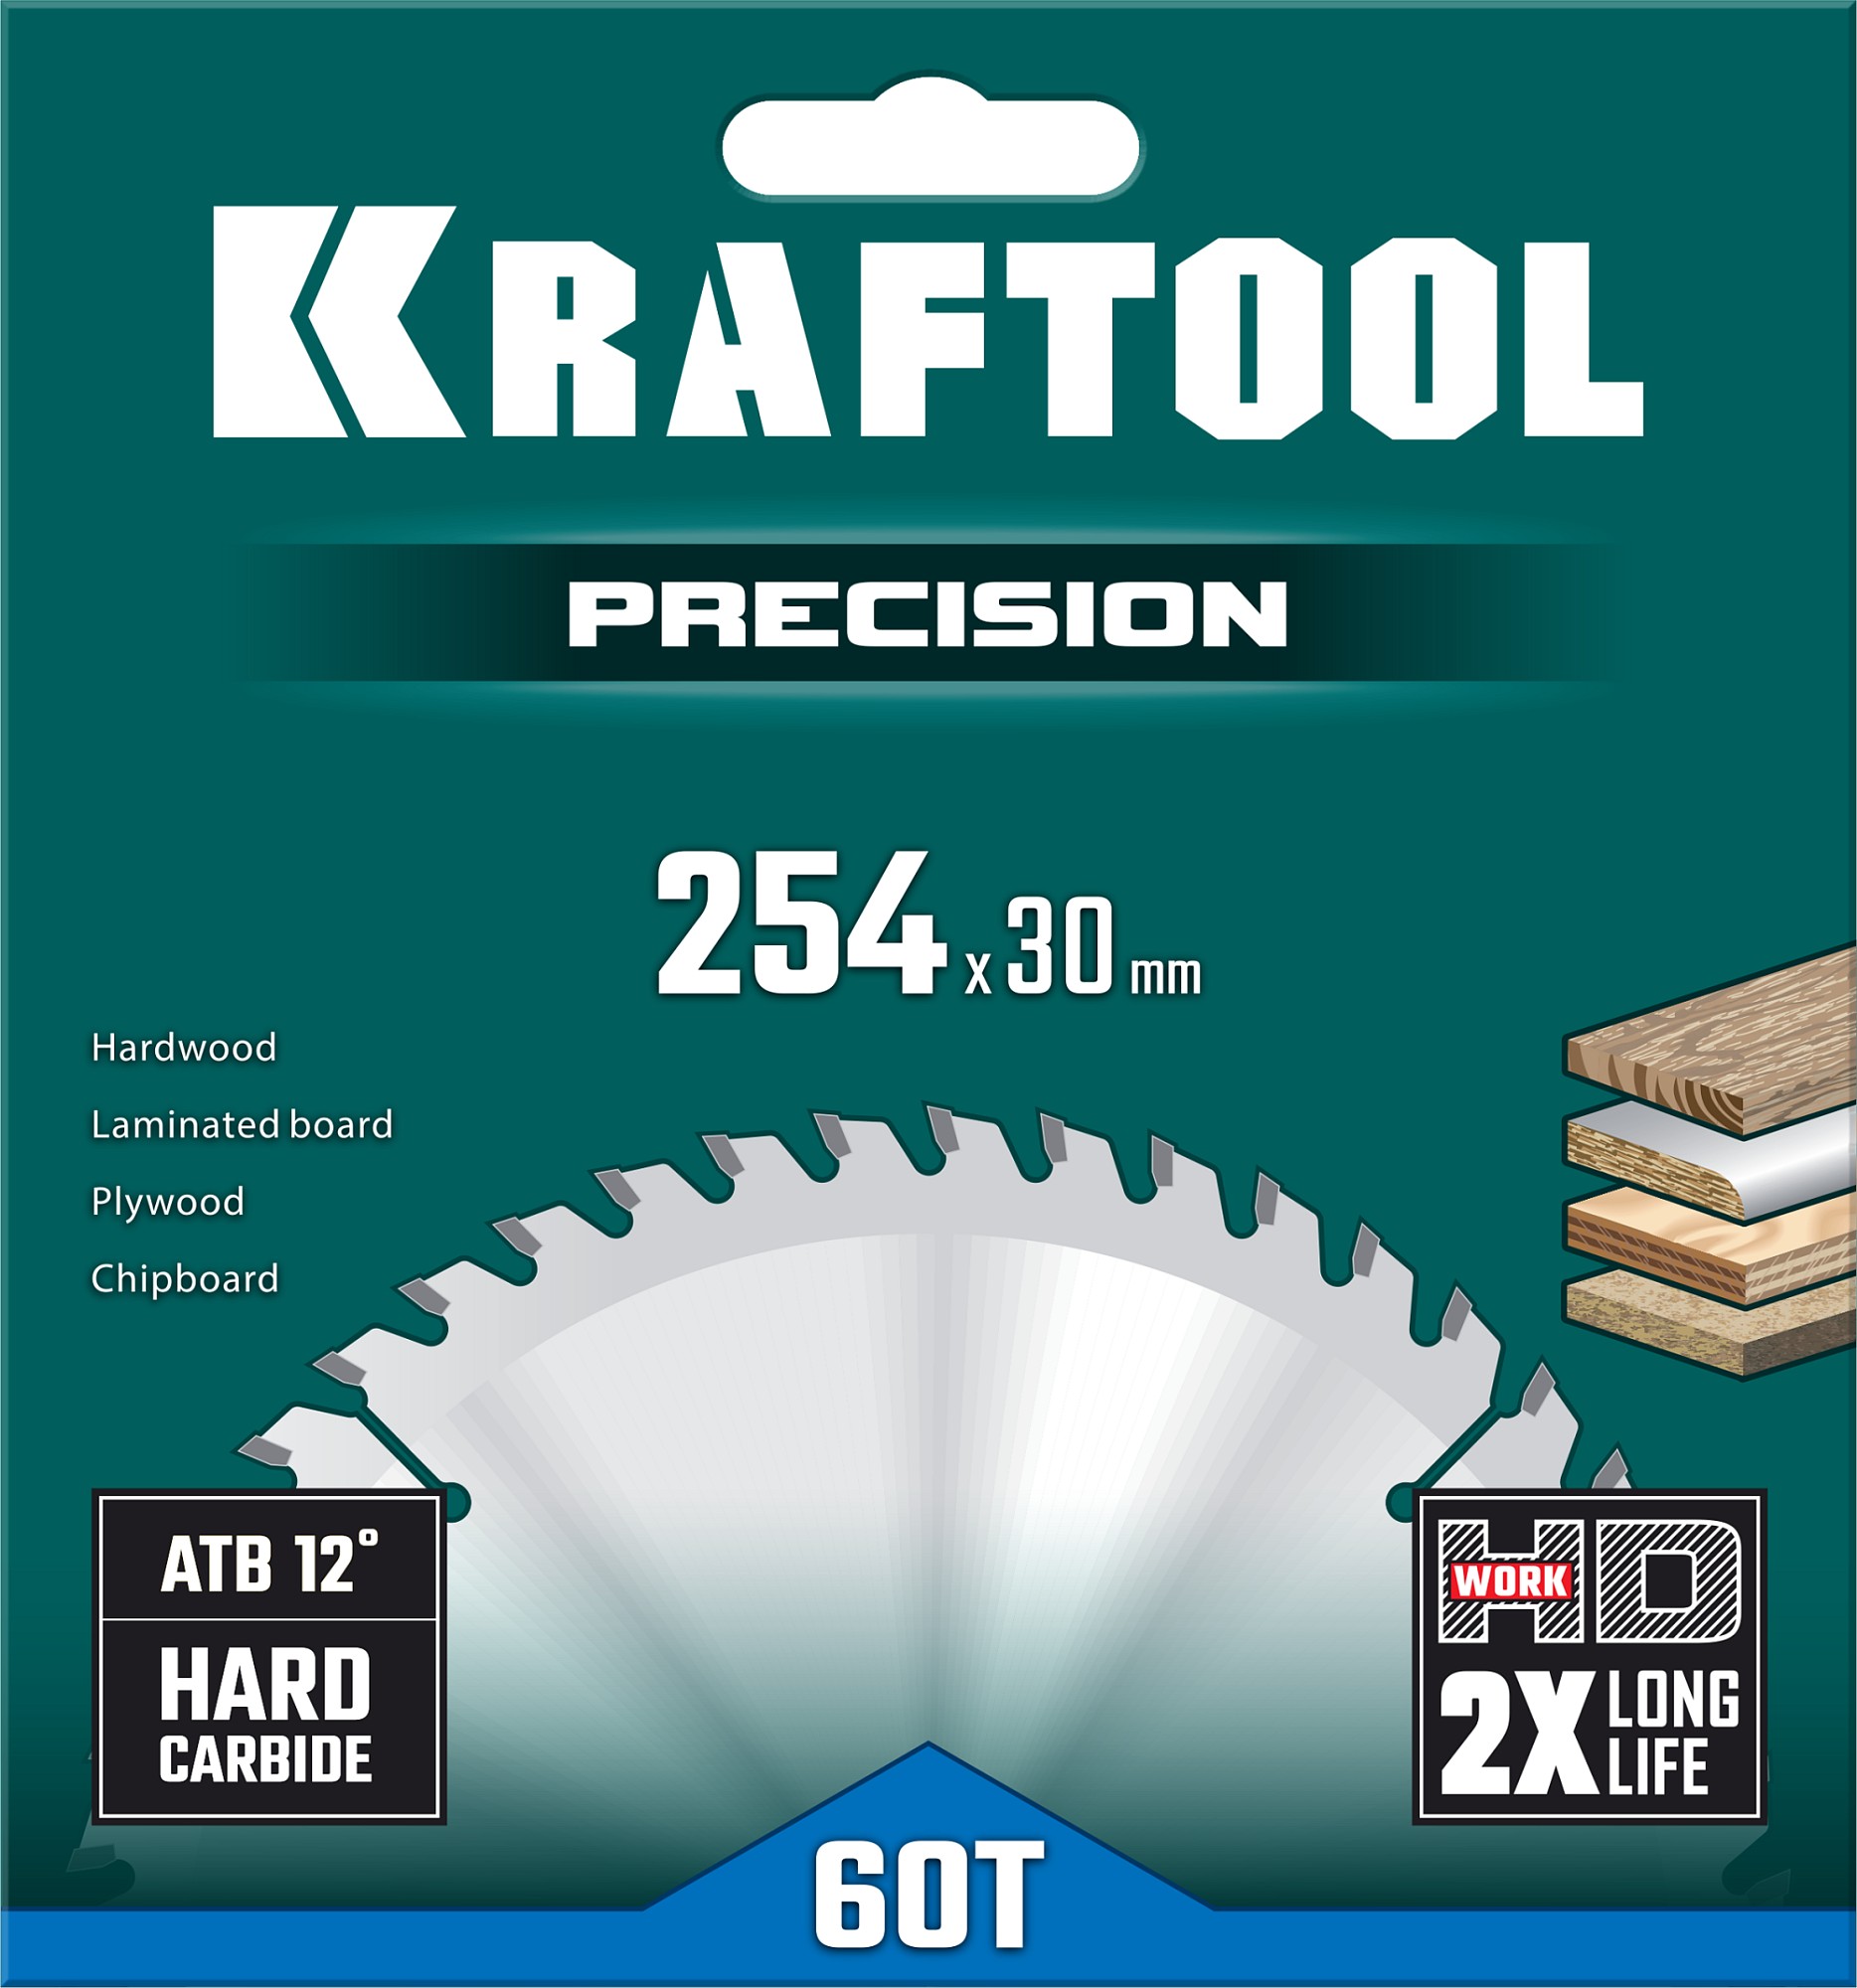 KRAFTOOL Precision, 254 х 30 мм, 60Т, пильный диск по дереву (36952-254-30)